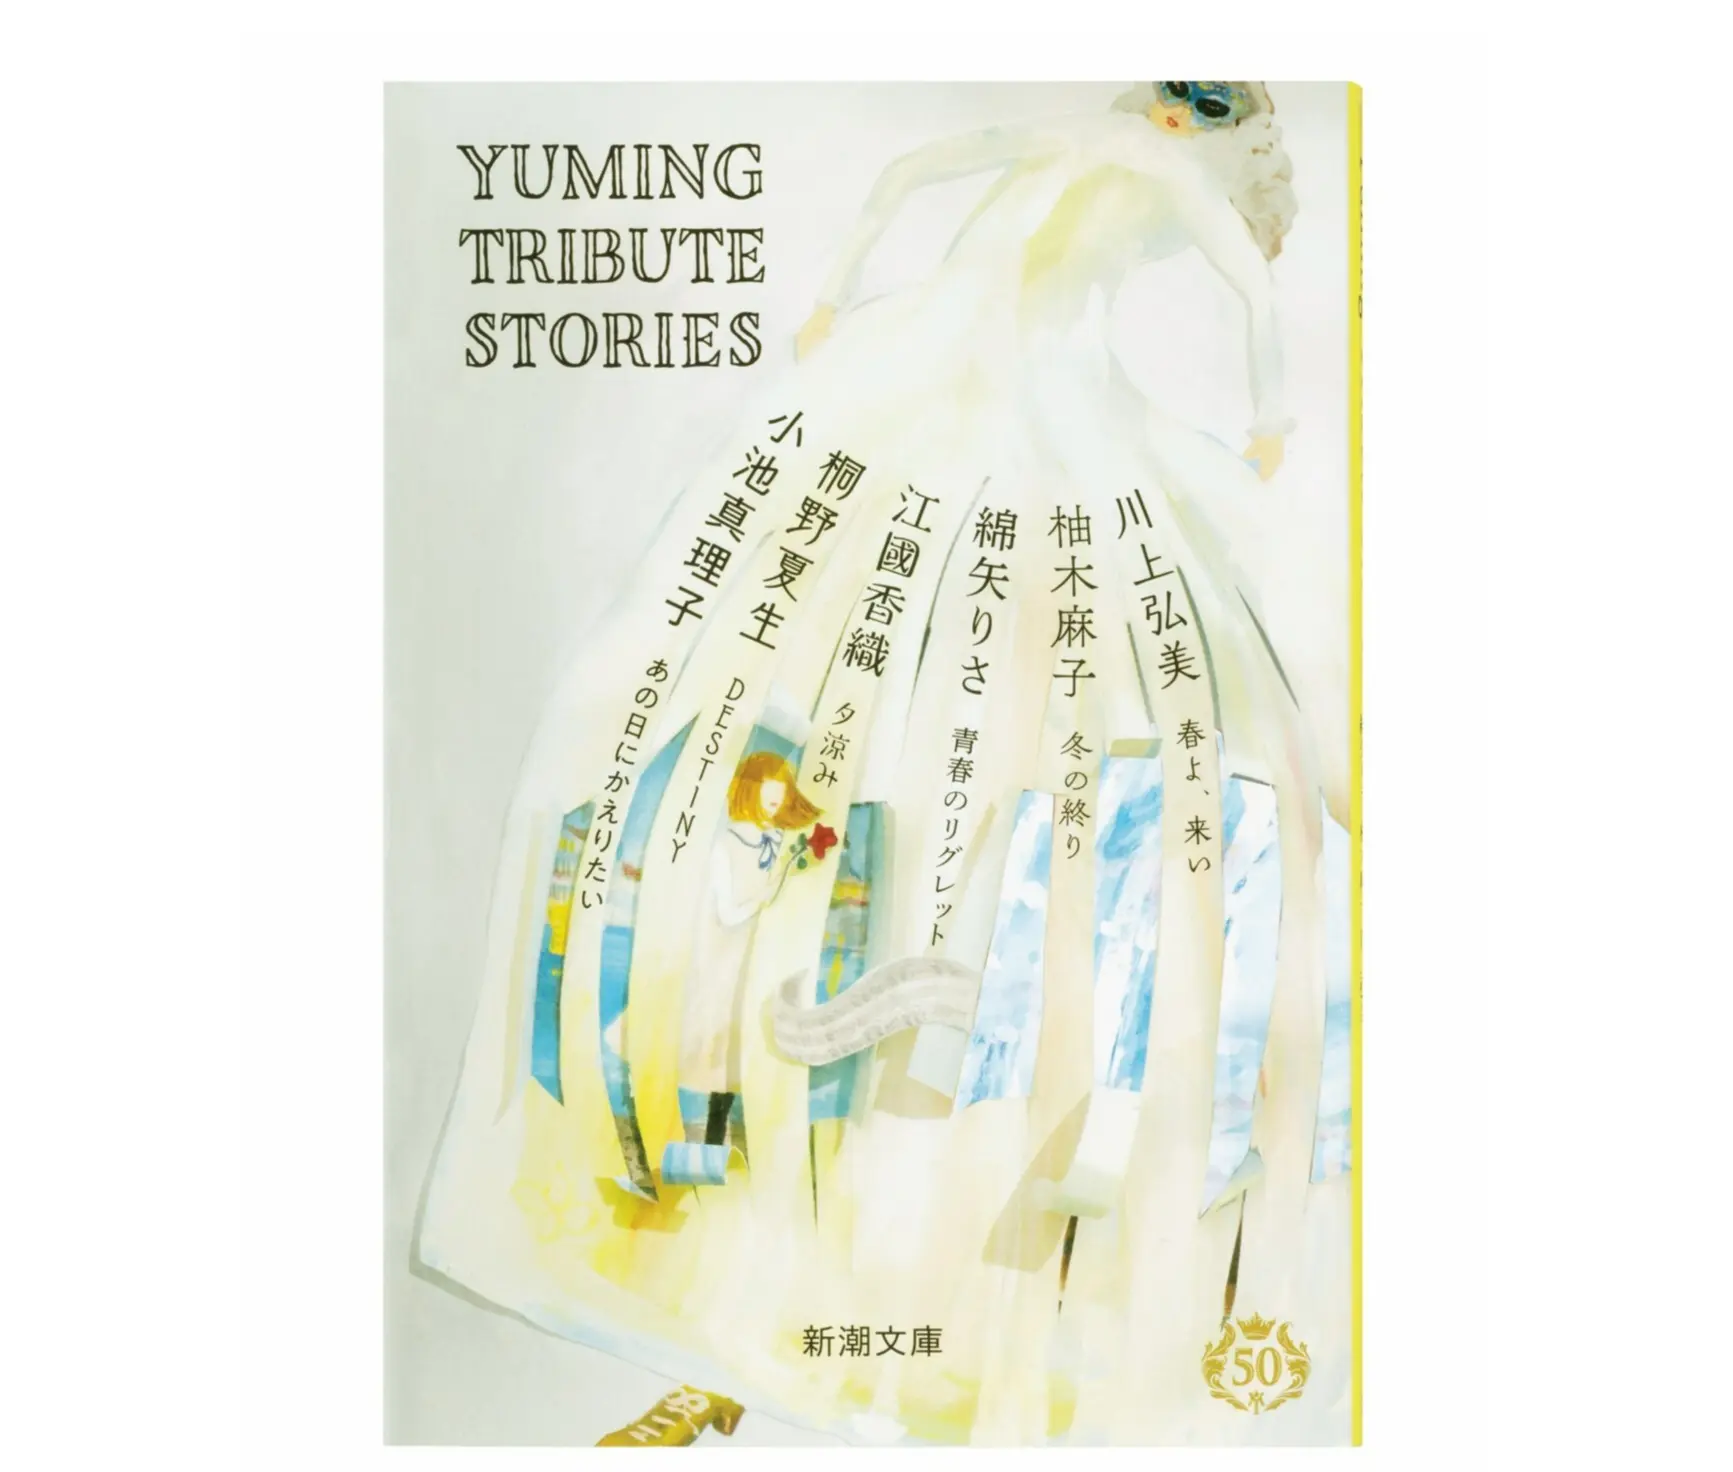 『Yuming Tribute Stories』